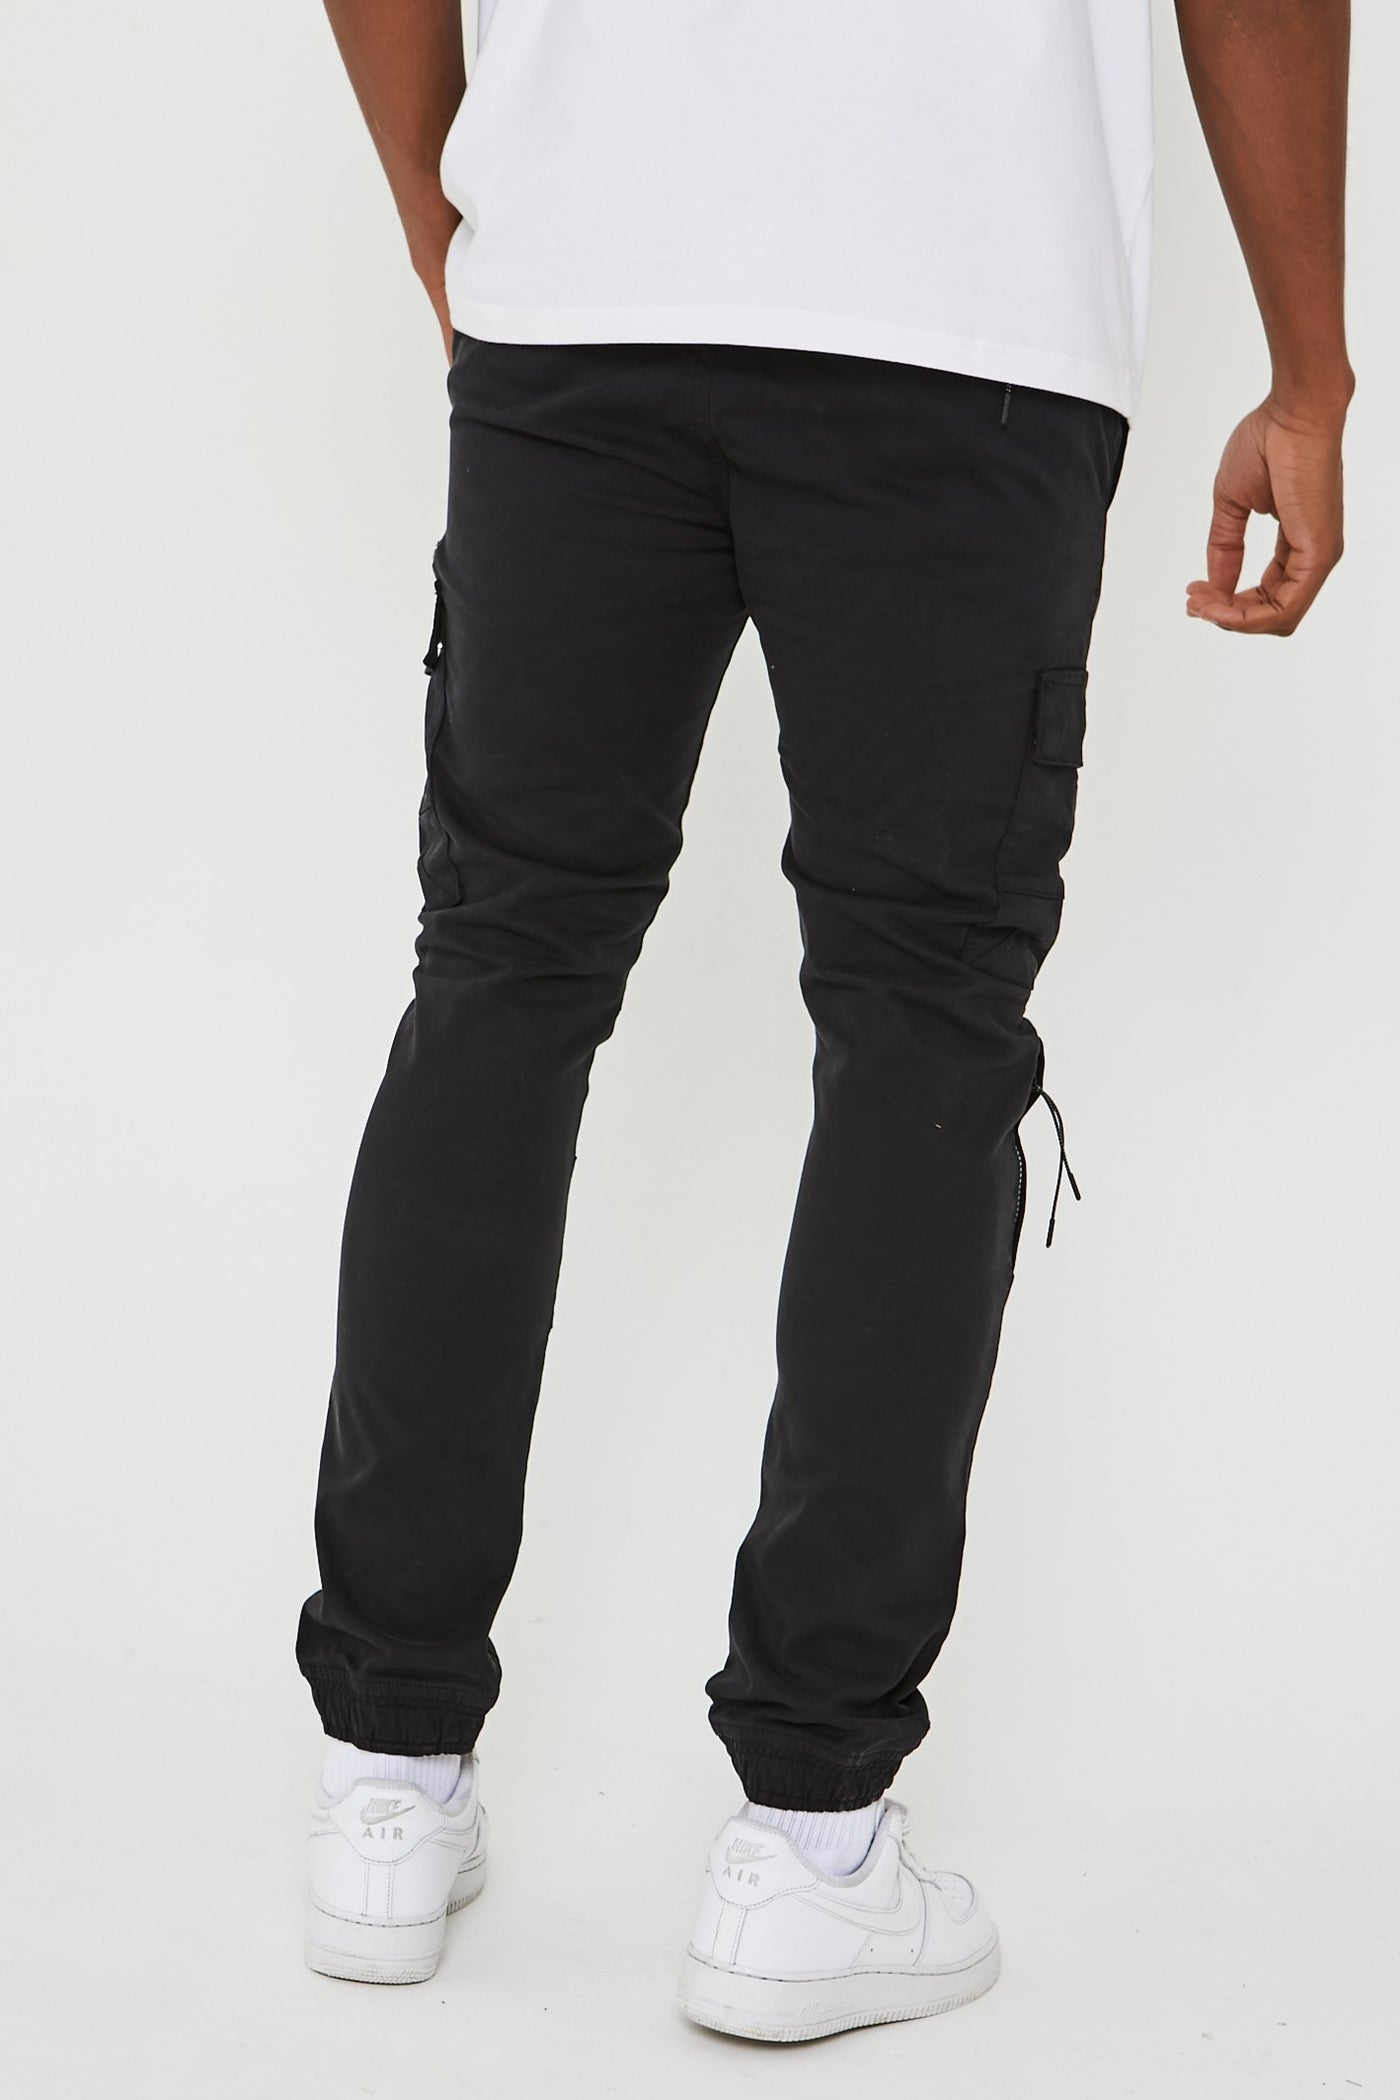 Becklow Cargo Pants - Black